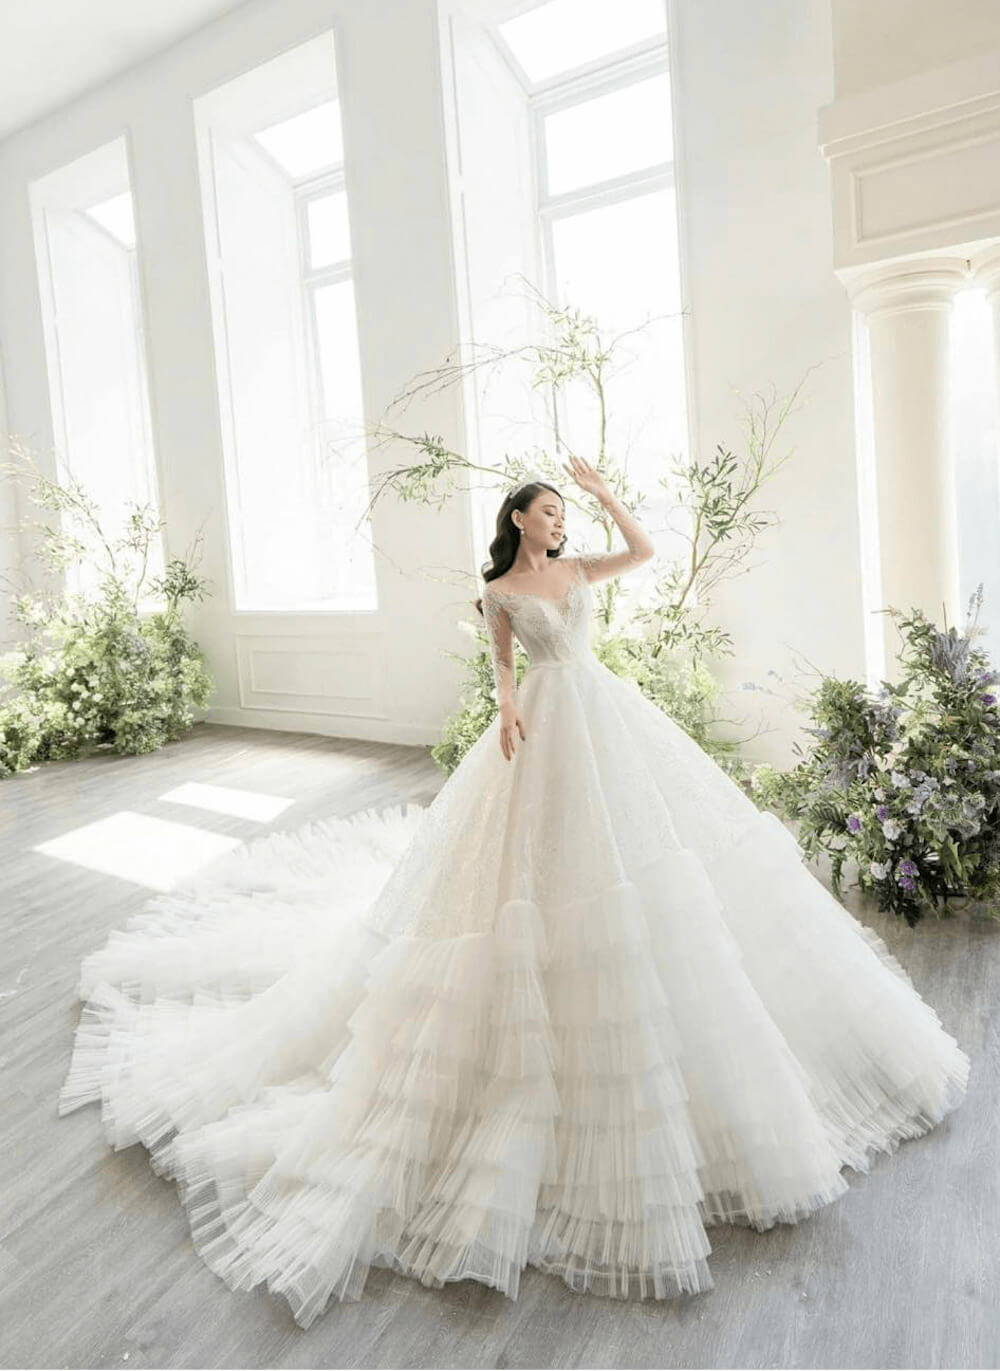 Váy cưới công chúa xòe vai nhún cánh bướm - FELY WEEDING